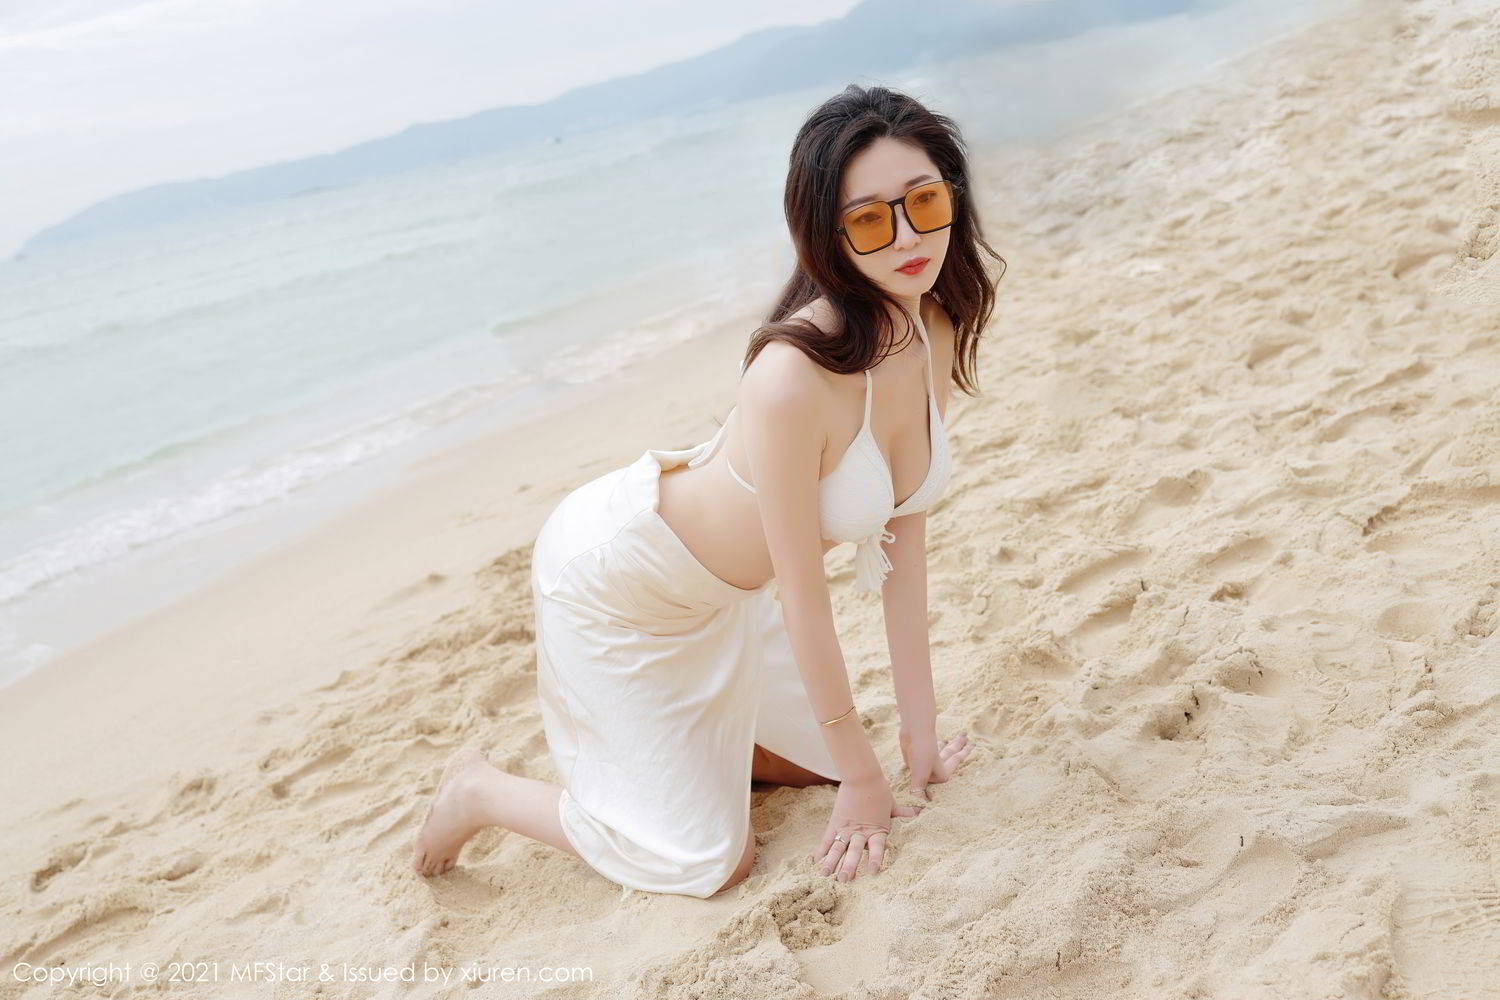 海边沙滩比基尼白裙美女安琪Yee性感旅拍写真显完美迷人身材图片